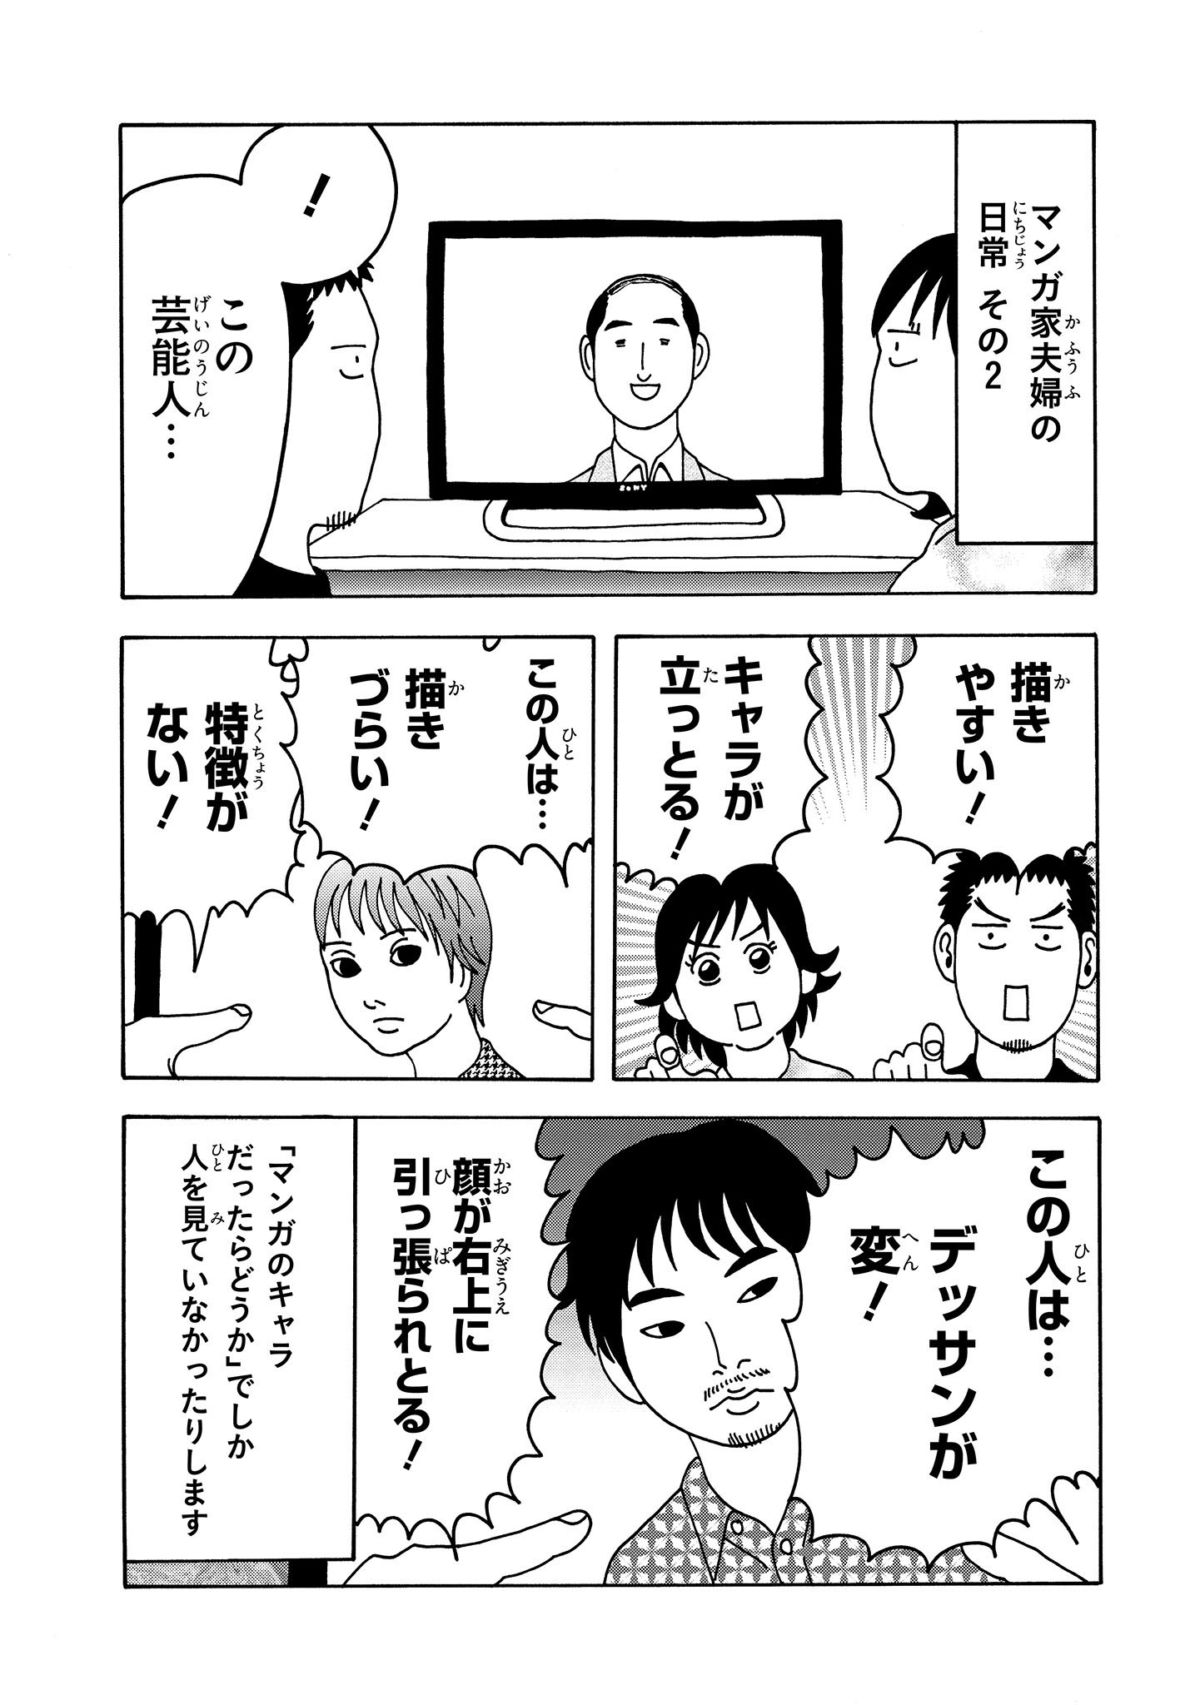 連載 きょうの横山家 第2話 続 漫画家夫婦の日常 ダ ヴィンチニュース